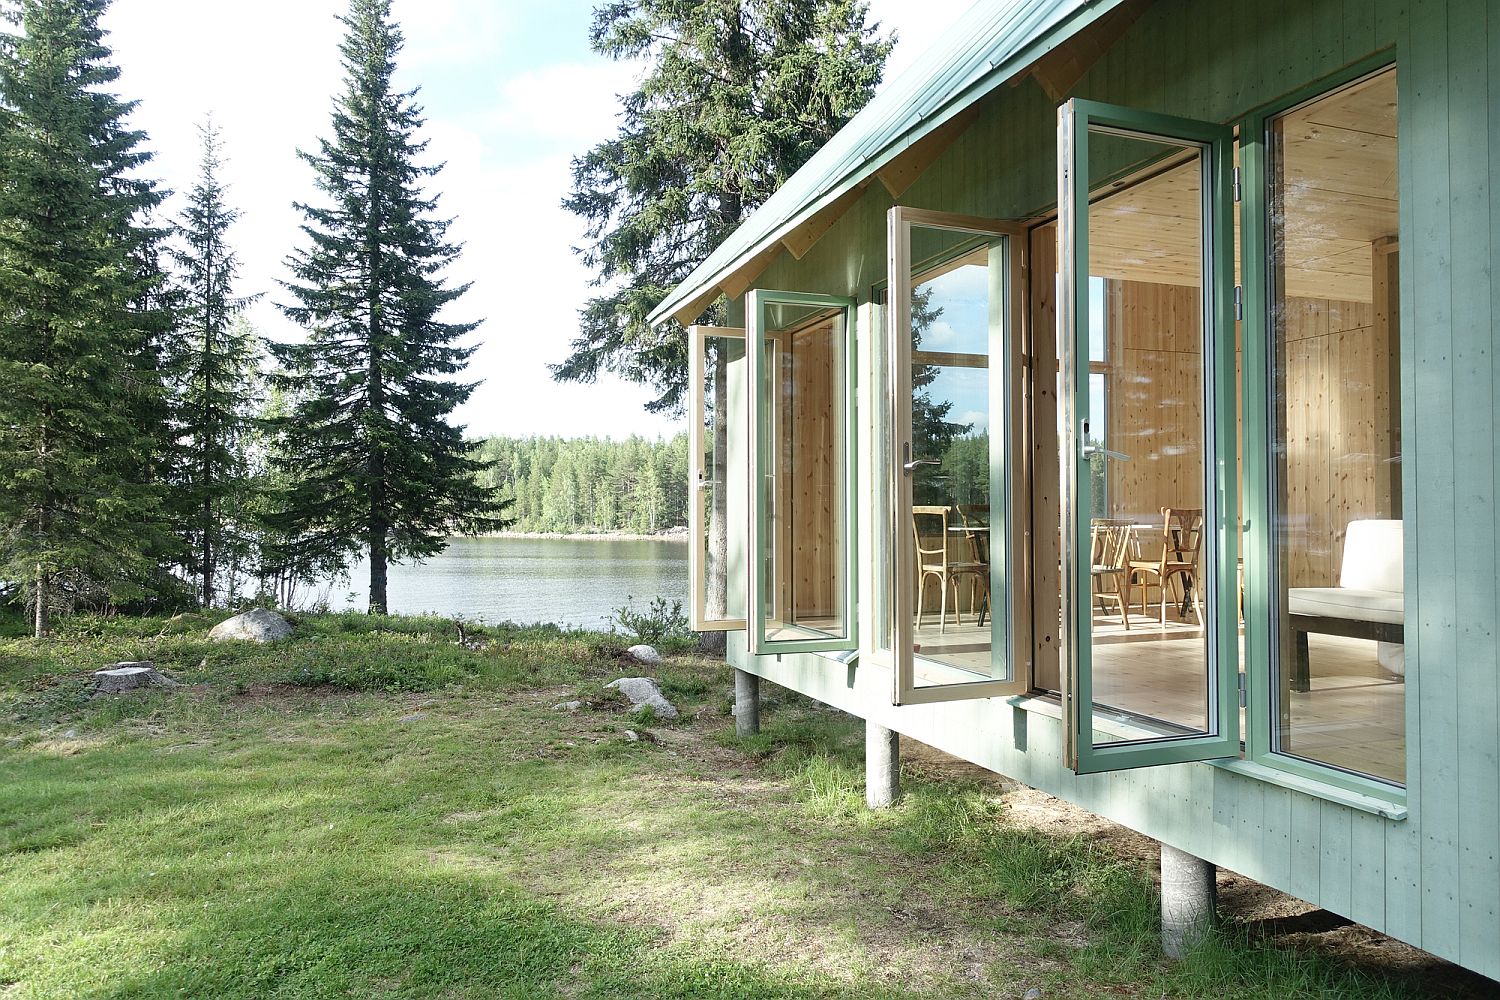 Lovely natural landscape around the Granholmen Summer Cottage in Sweden